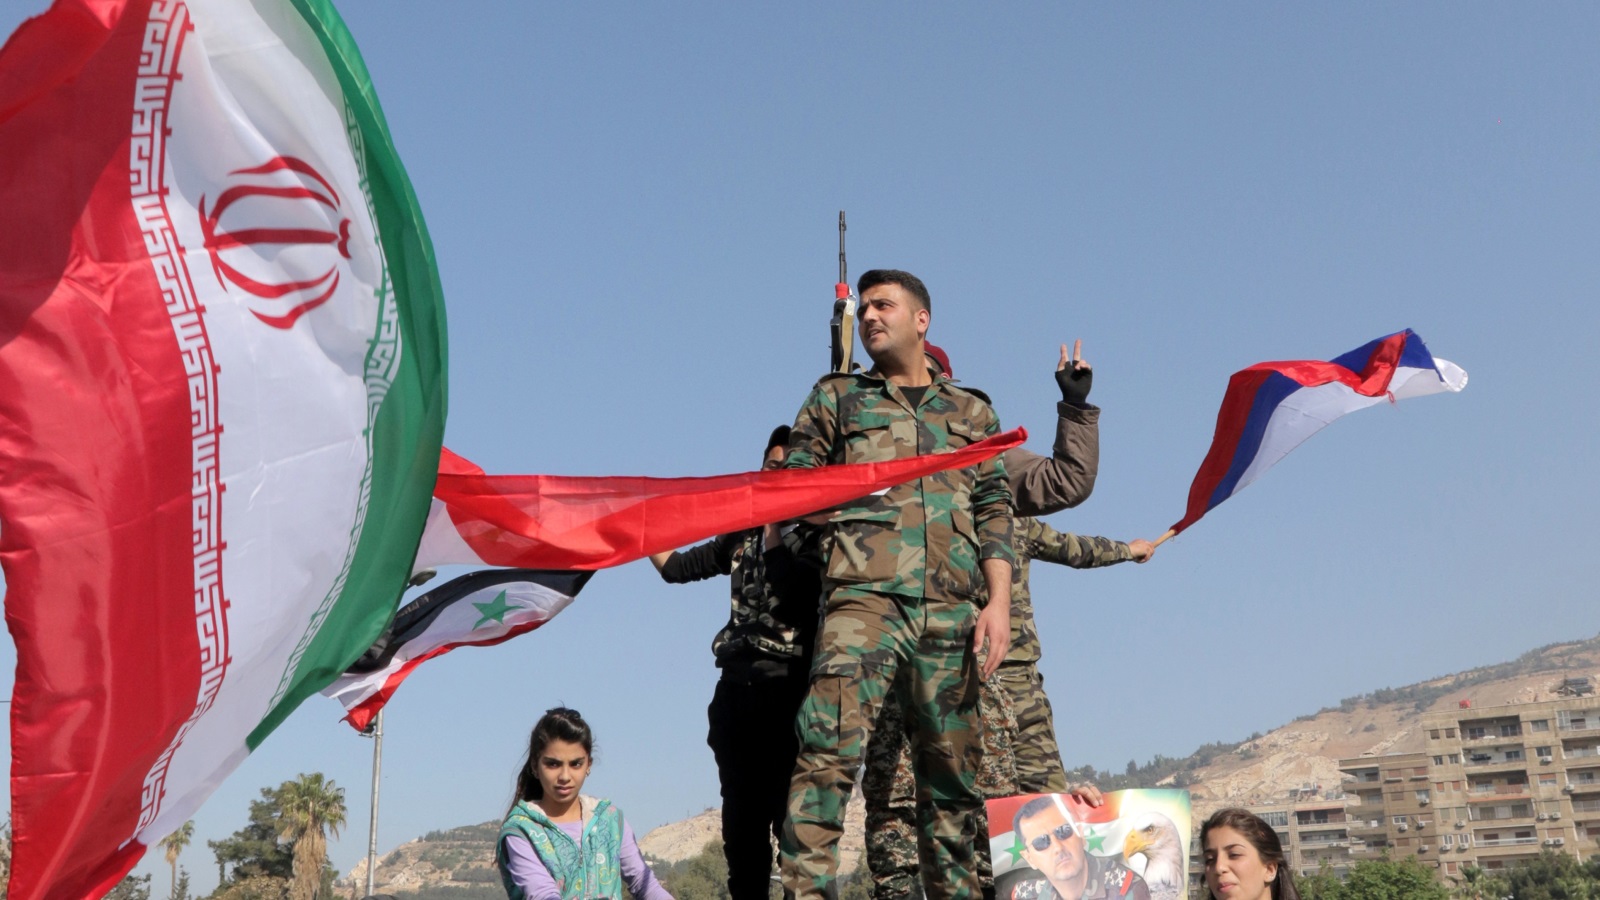 ‪جنود سوريون يحملون الأعلام الروسية والإيرانية‬ جنود سوريون يحملون الأعلام الروسية والإيرانية (الأوروبية)